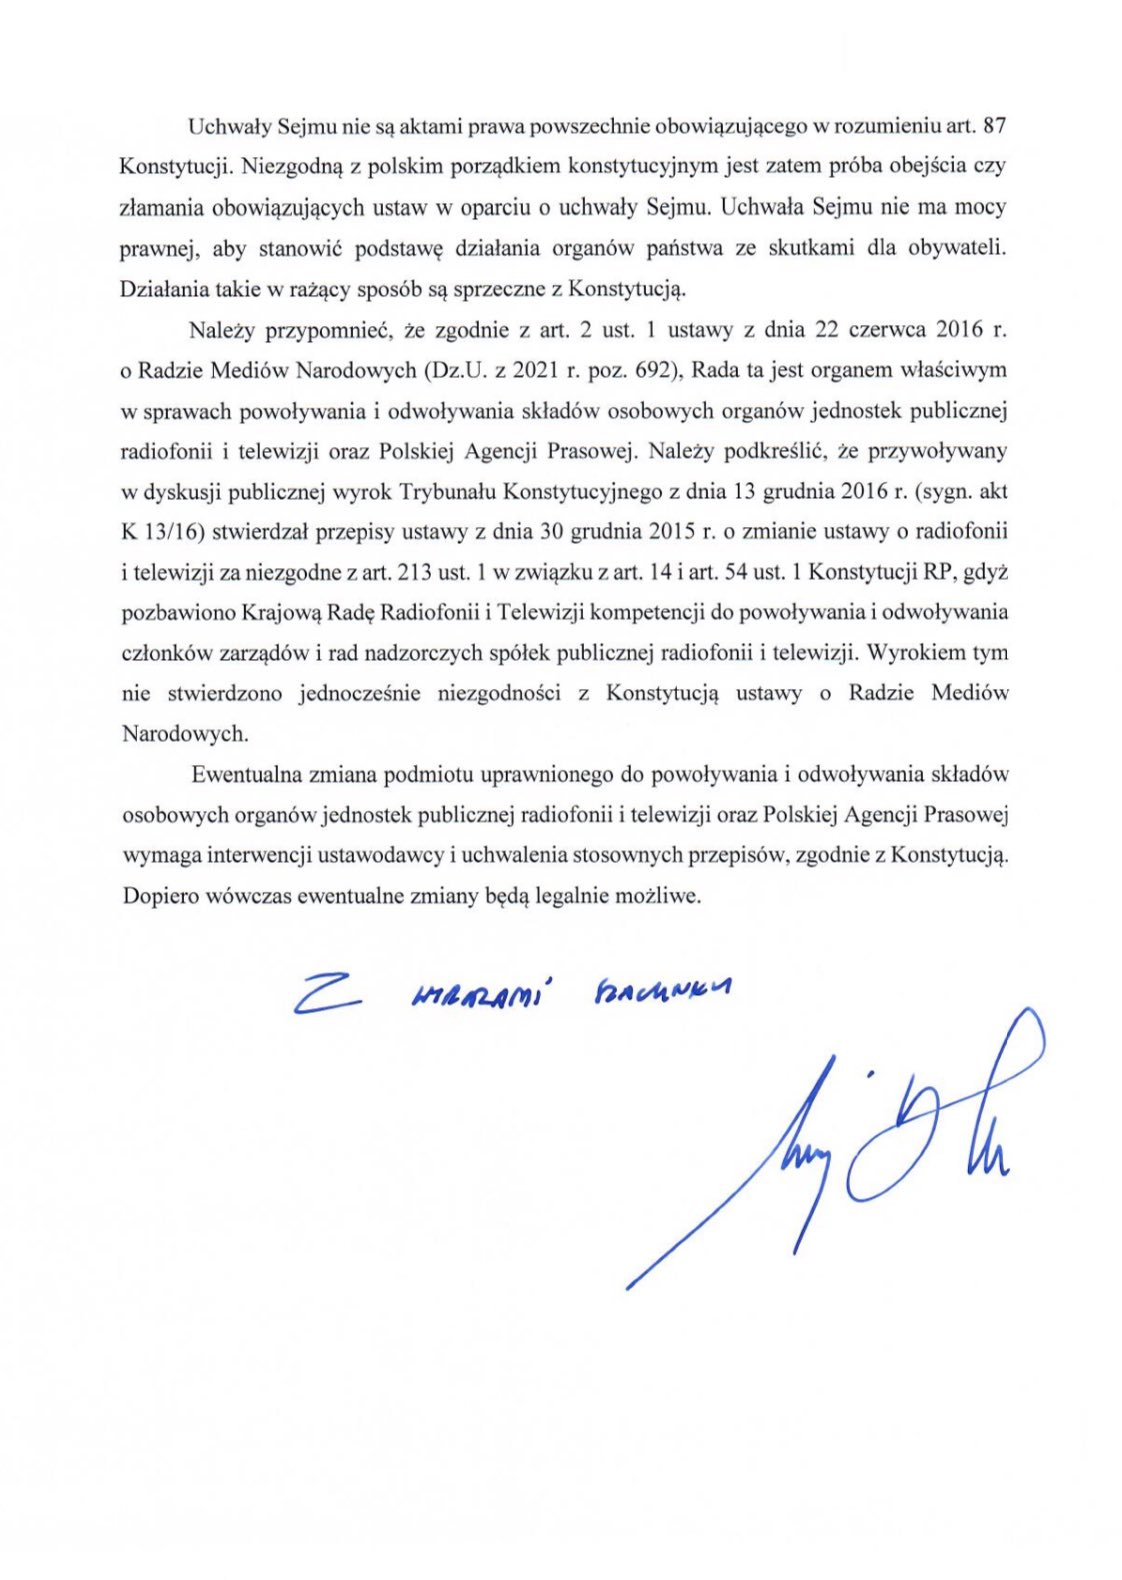 Prezydent apeluje do premiera Tuska ws. mediów: wzywam do respektowania polskiego porządku prawnego Radio Zachód - Lubuskie